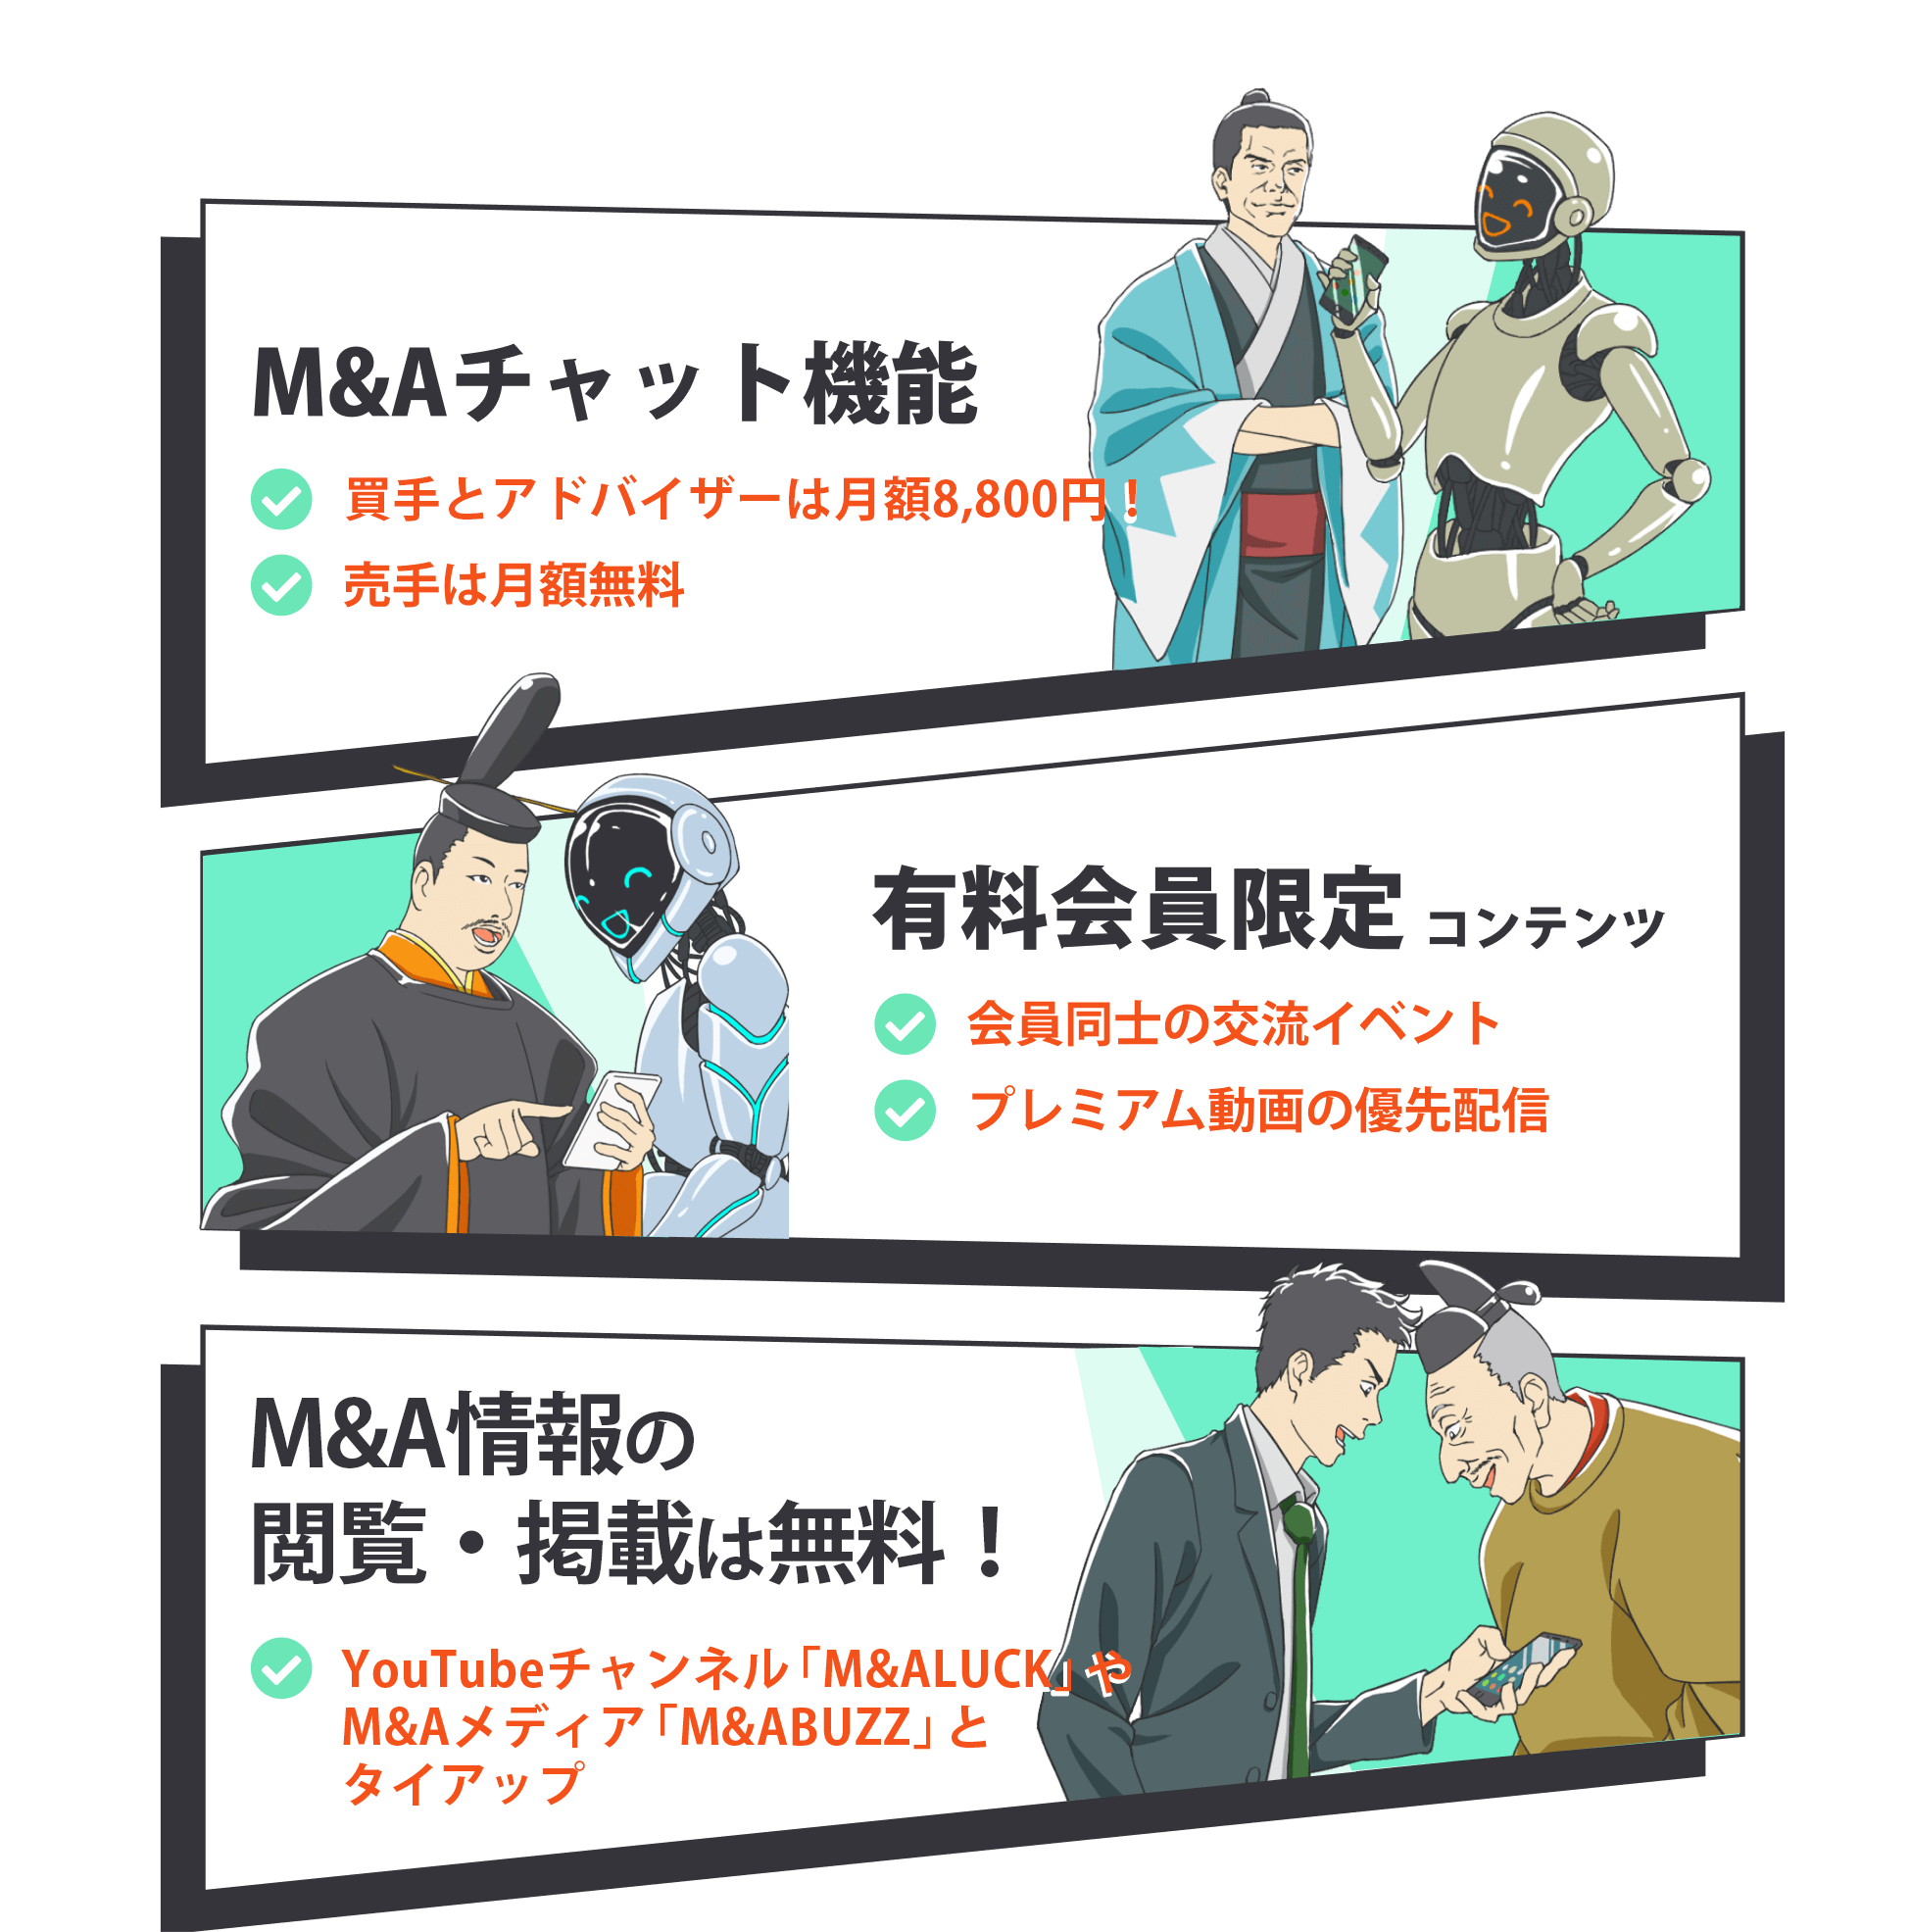 M&A 特徴　チャット機能 売手無料 有料会員限定 イベント M&A情報のやりとり マッチング